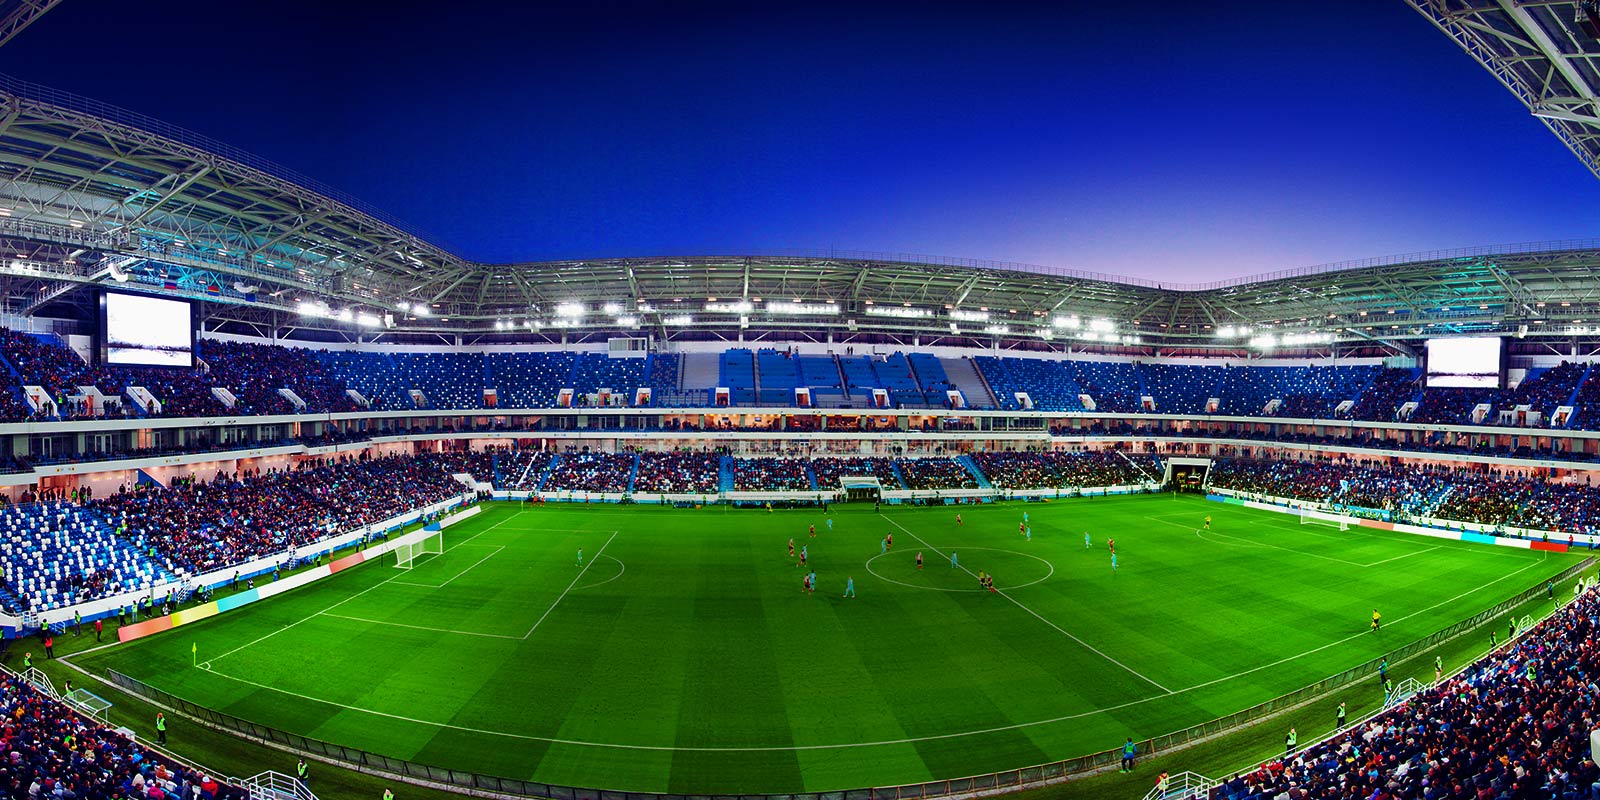 O vedere cu unghi larg a unui stadion de fotbal plin cu spectatori și cu un meci în desfășurare.